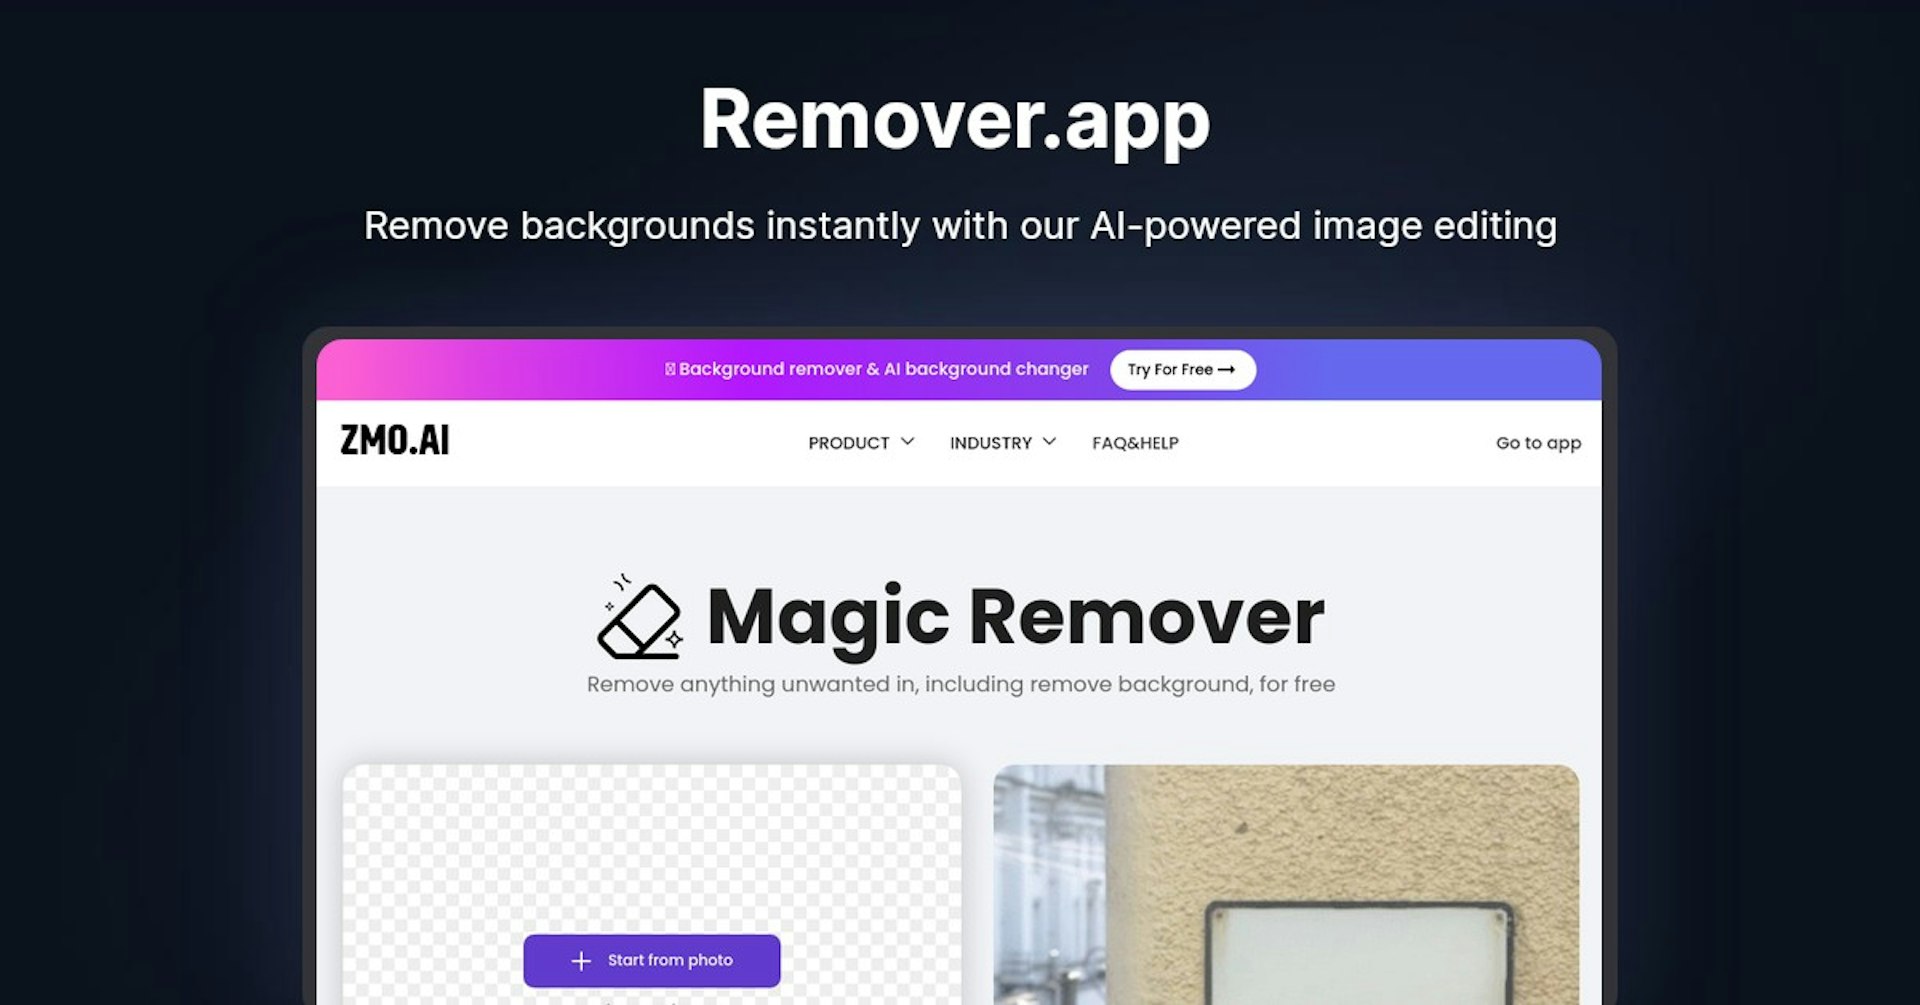 Remover.app